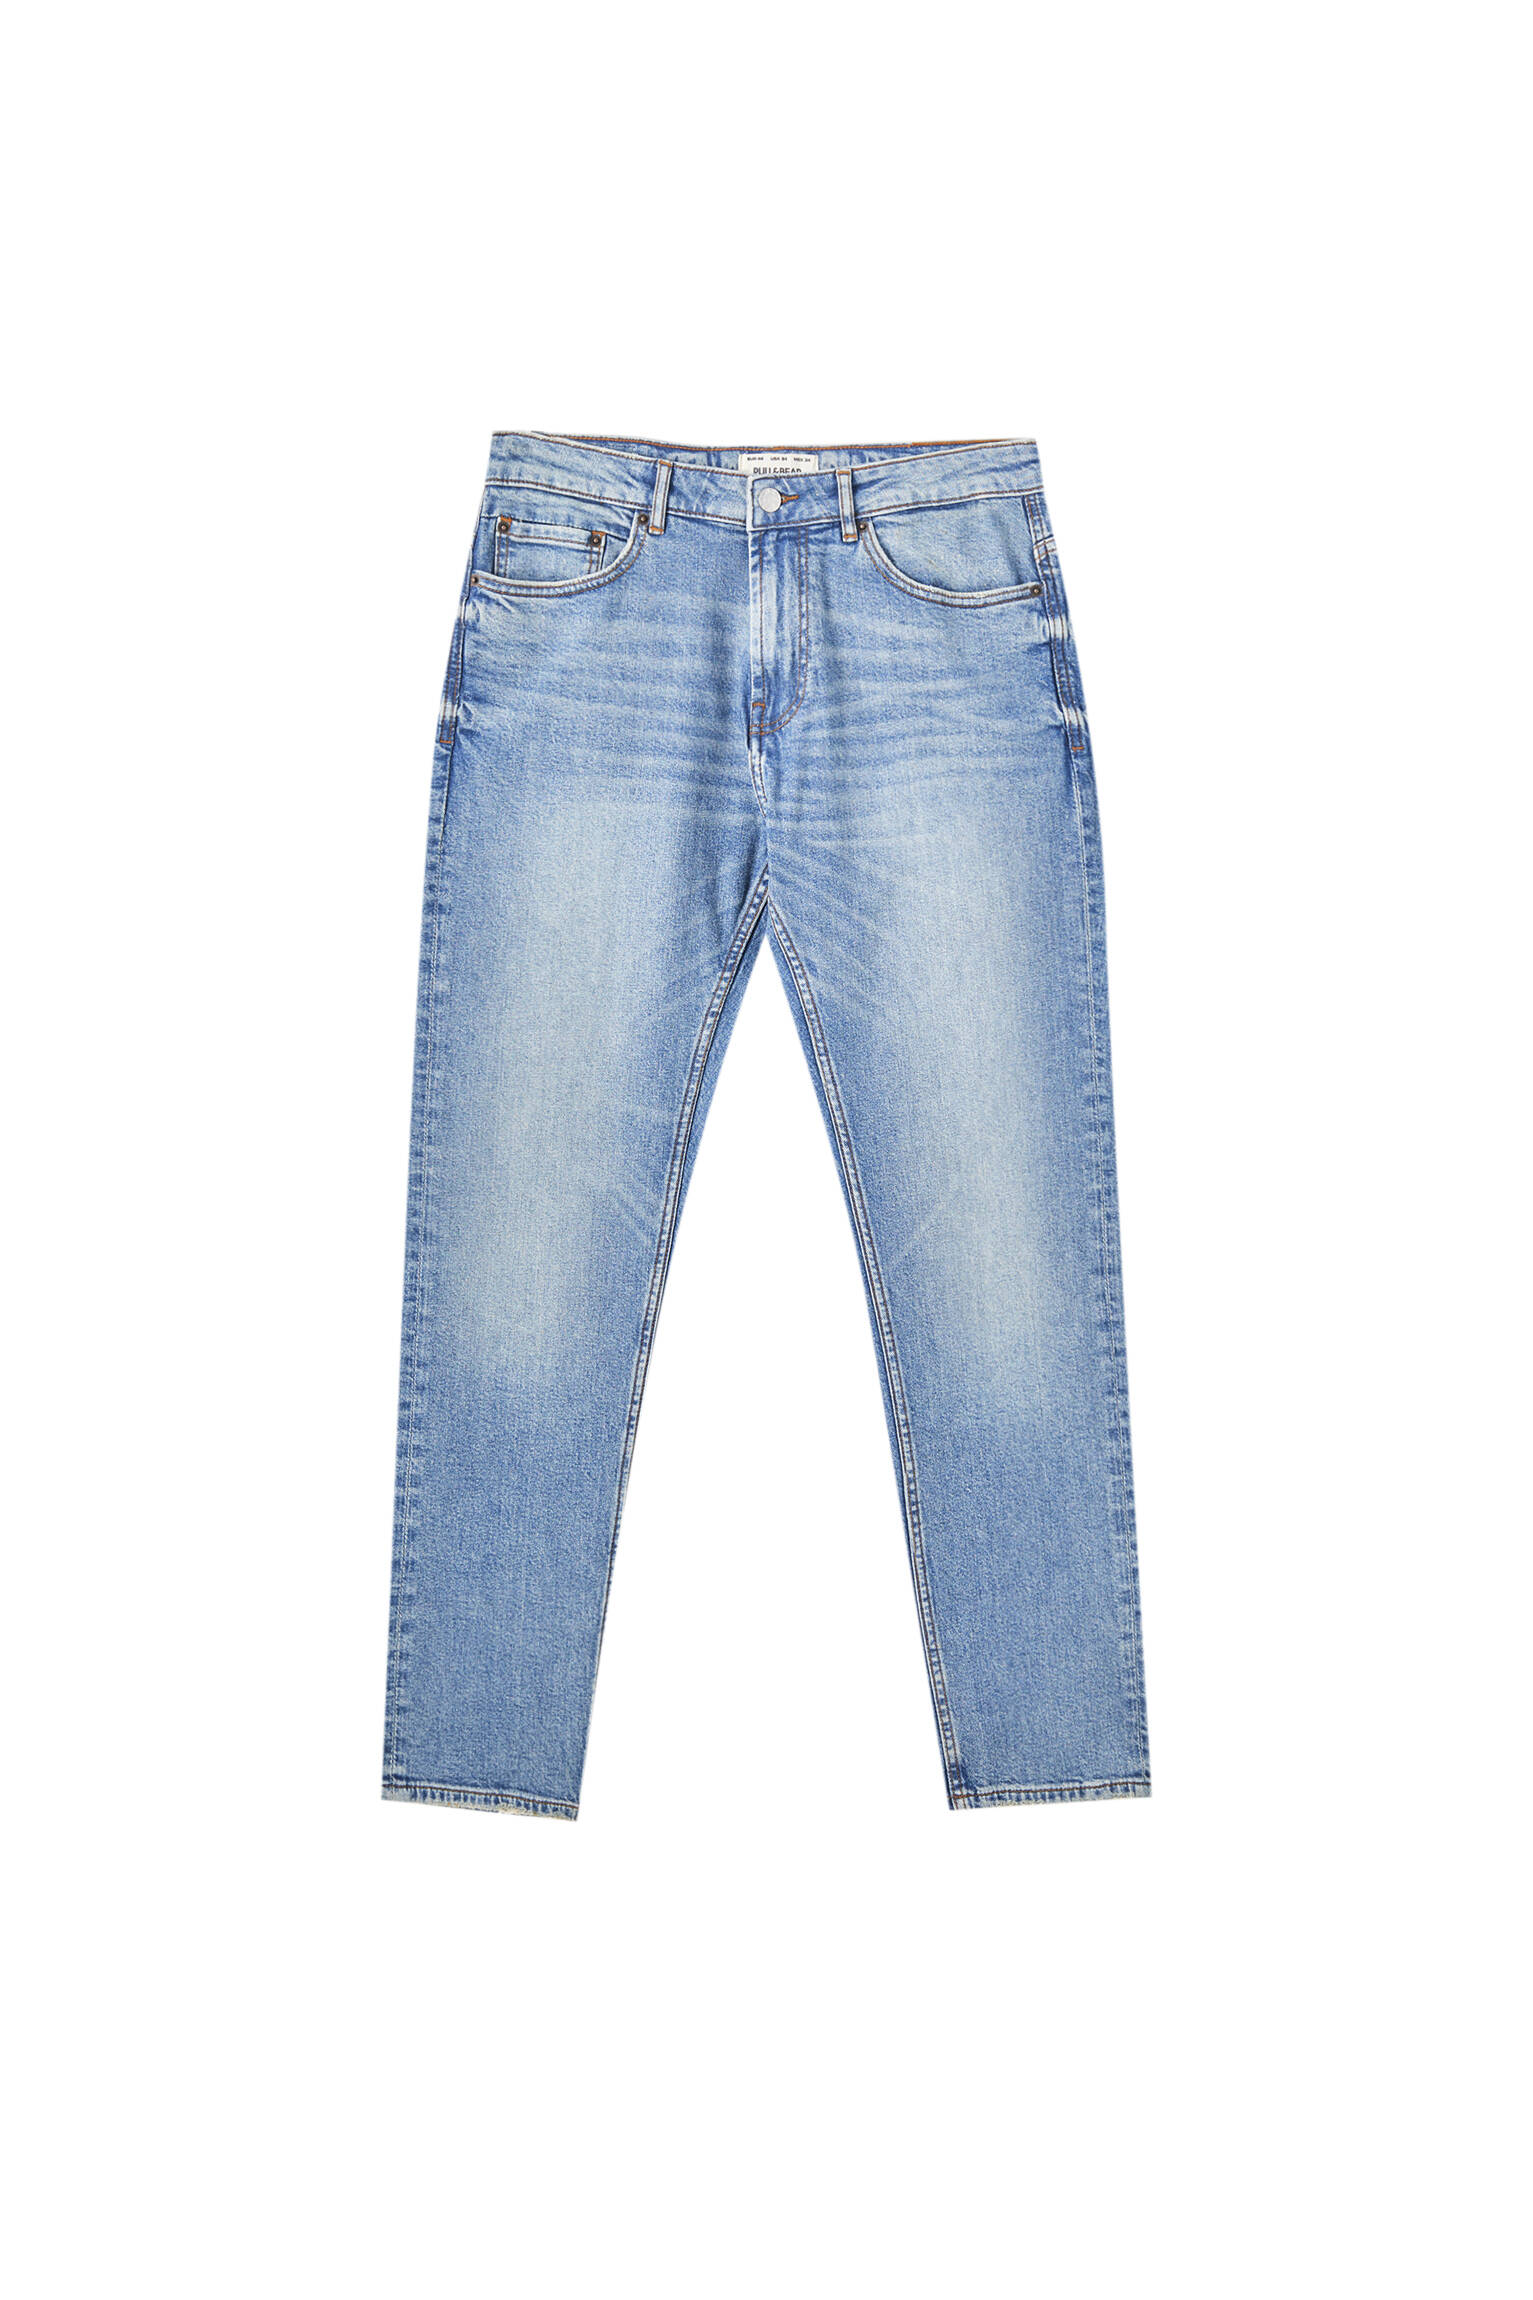 Зауженные джинсы выцветшего синего цвета НЕОНОВО-СИНИЙ Pull & Bear